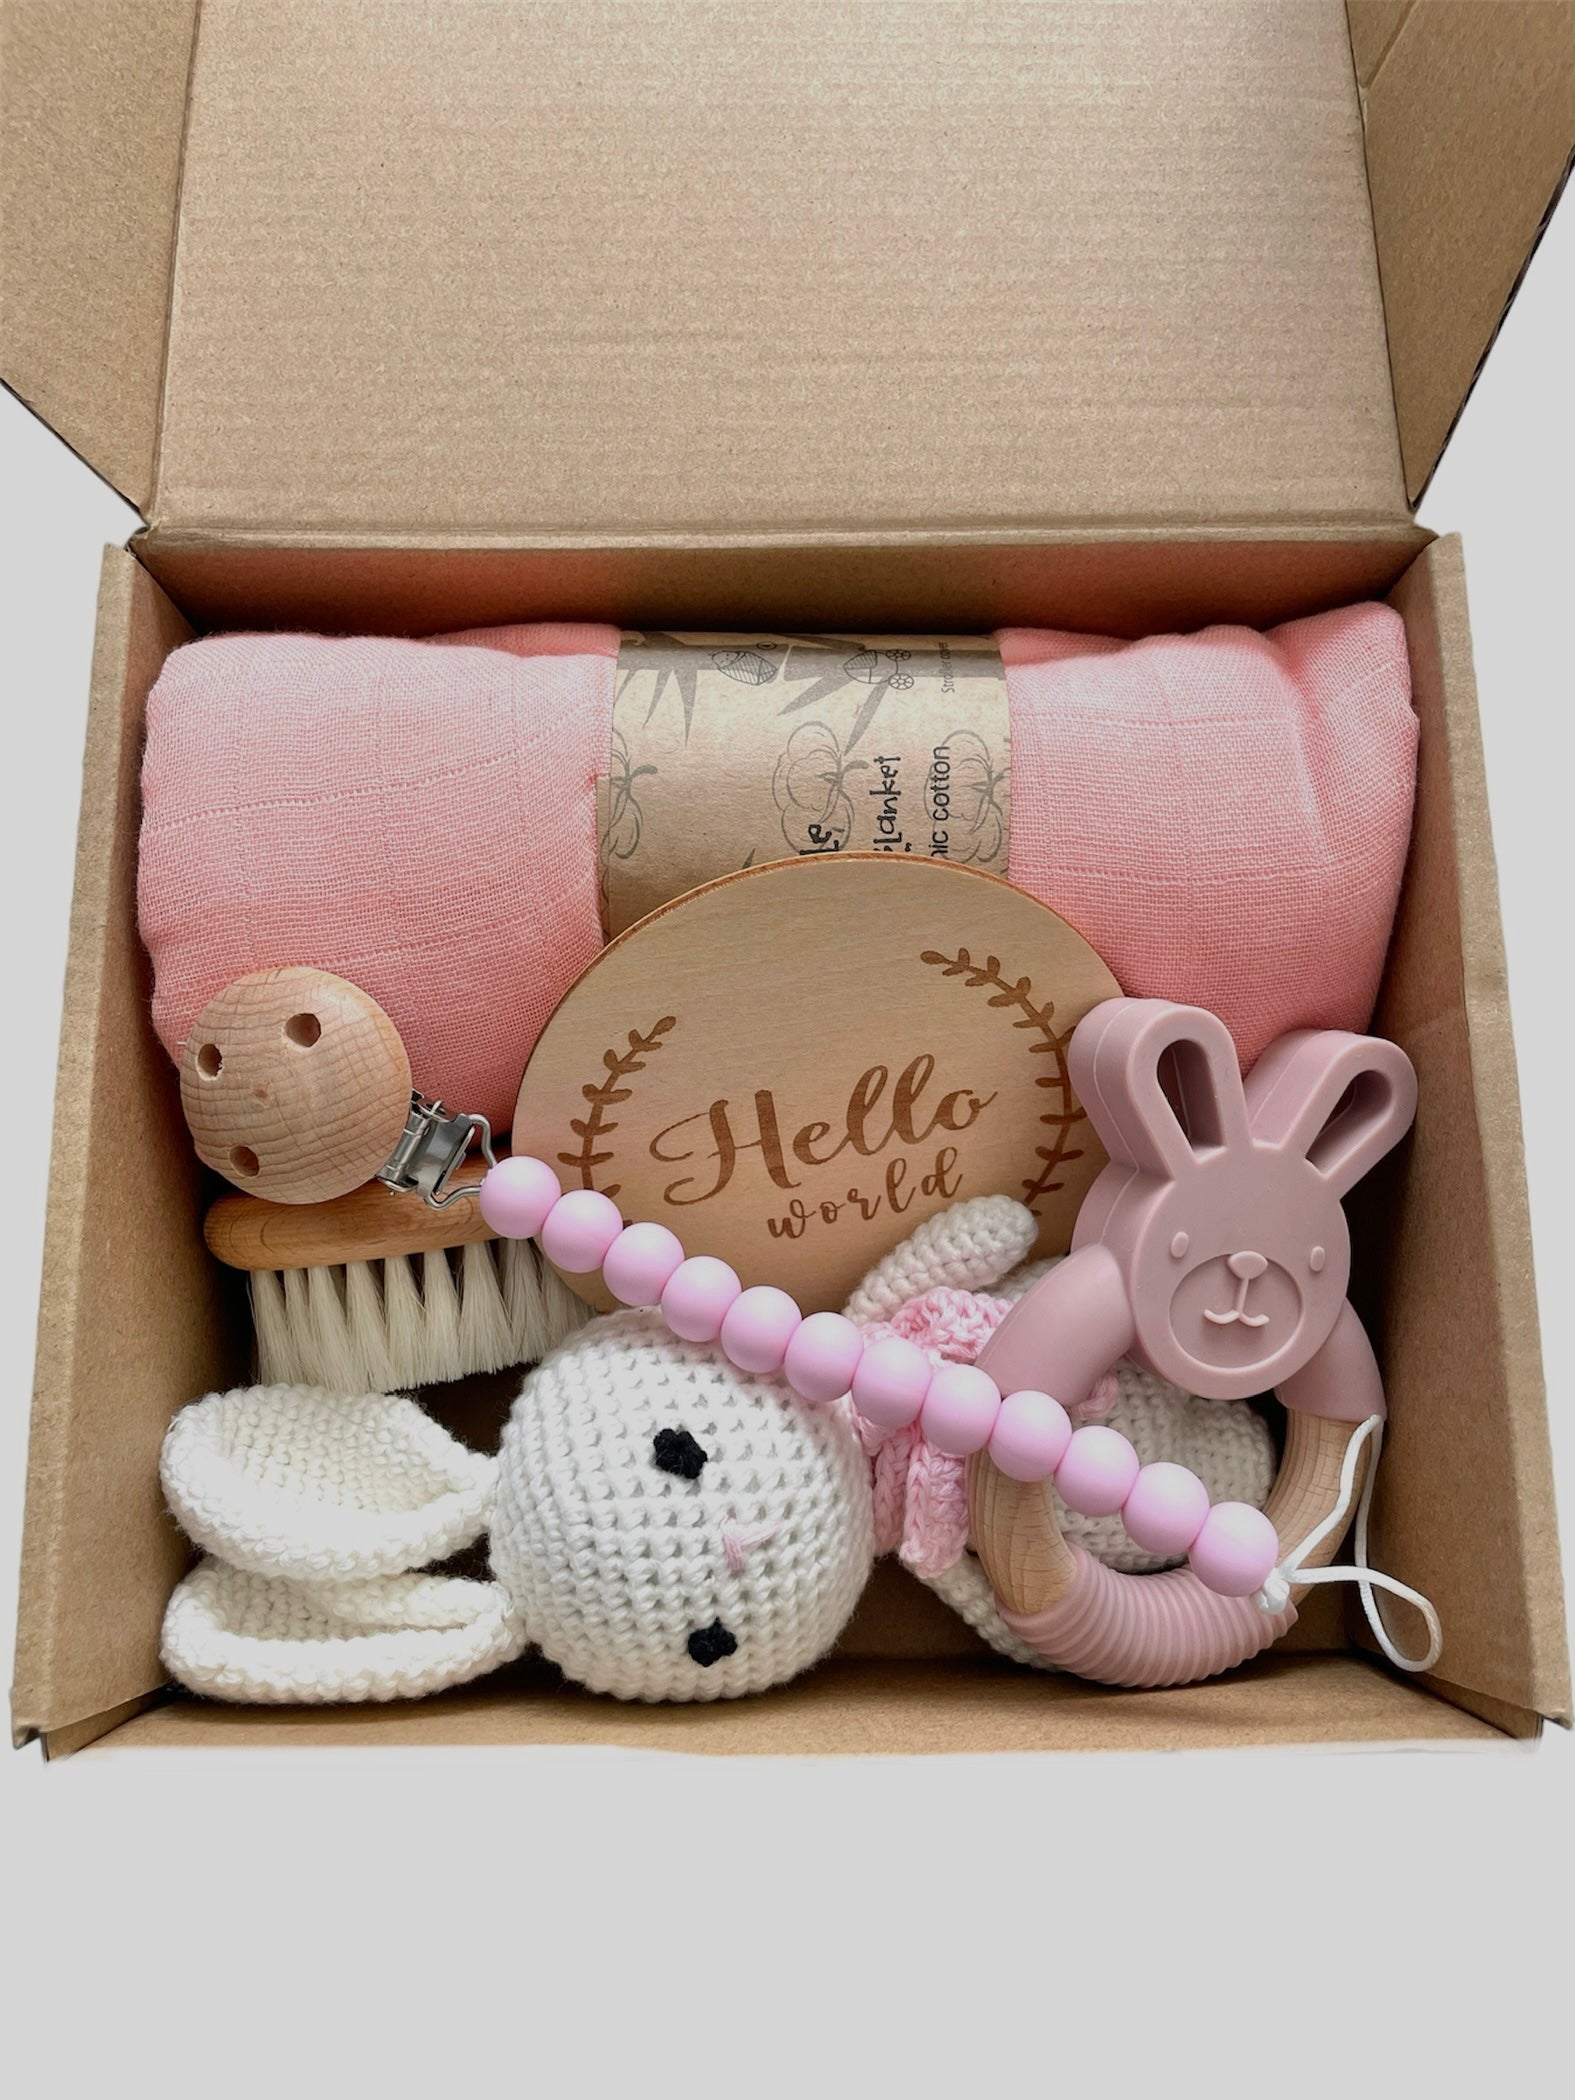 Newborn gift hamper, baby shower gift, baby gift box, pink